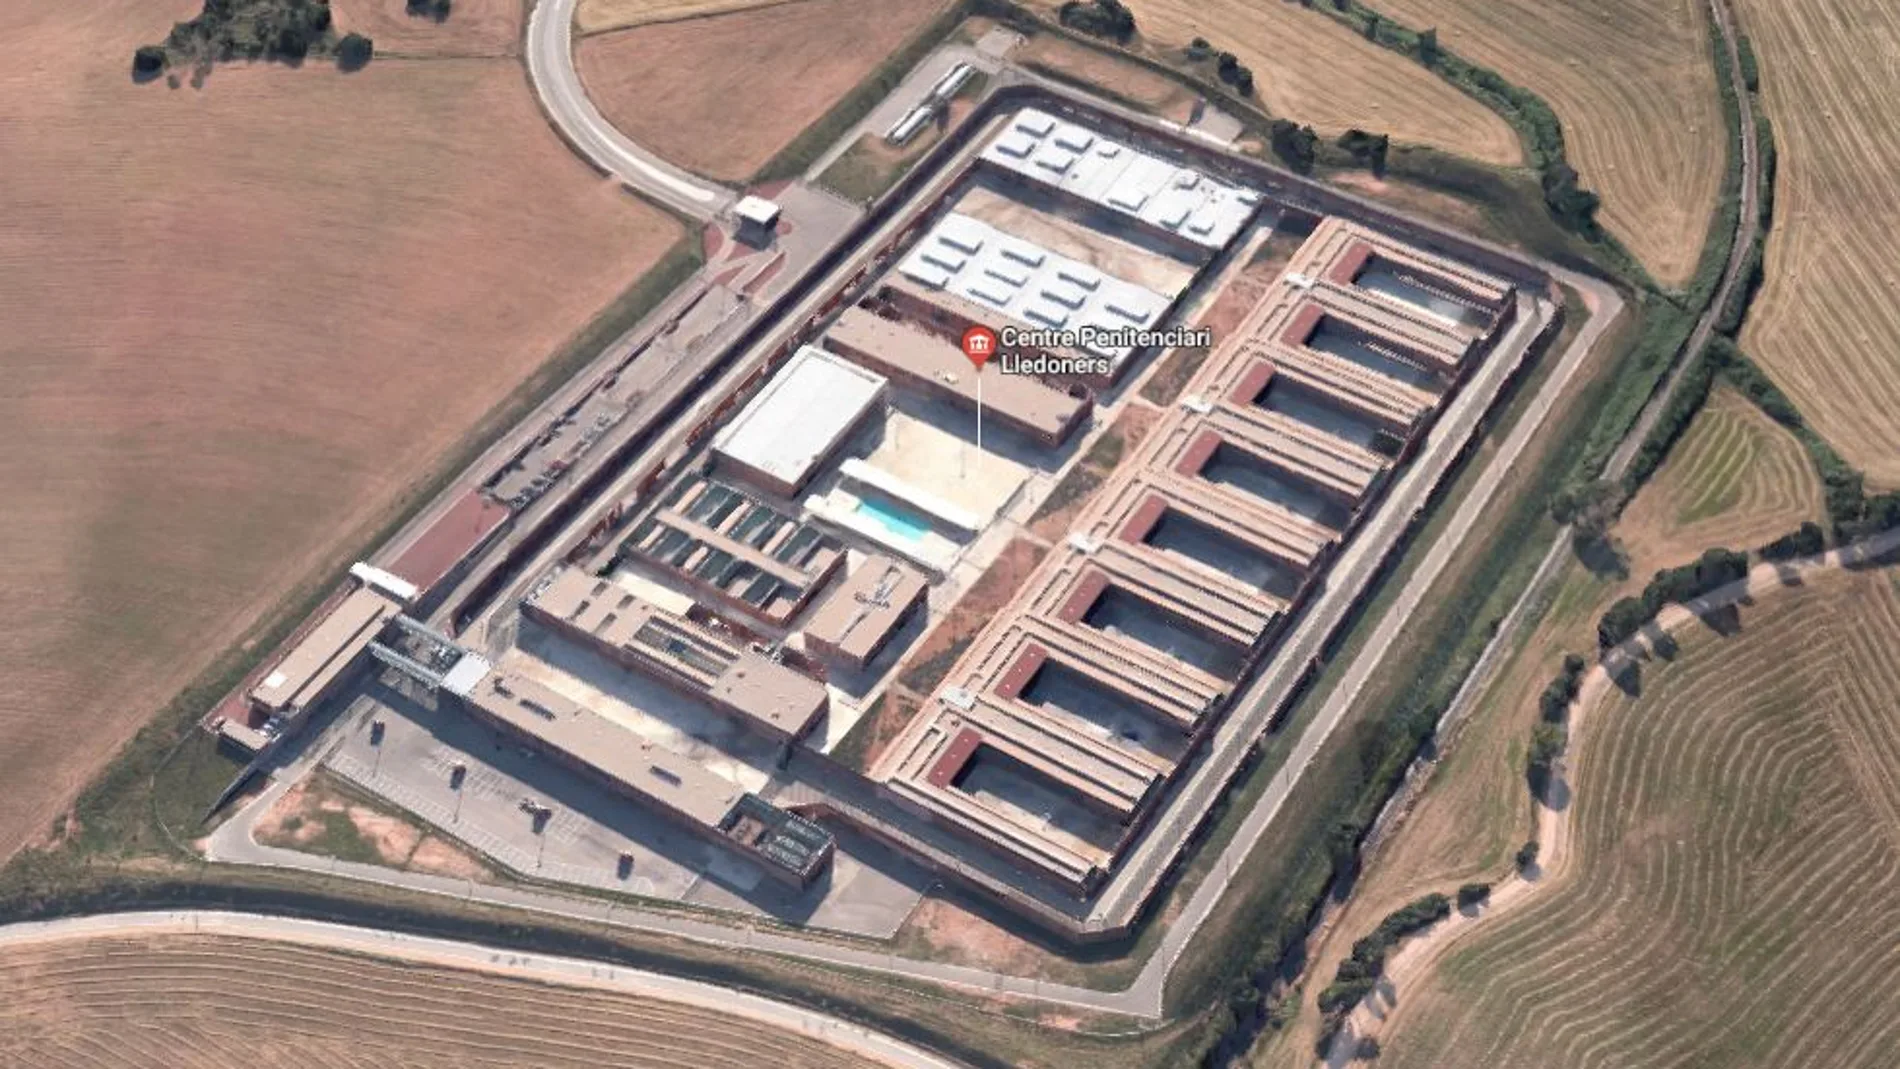 Cárcel de Lledoners, situado a 70 kilómetros de Barcelona, junto a la C-55, a la altura de Sant Joan de Vilatorrada. (Google Maps)